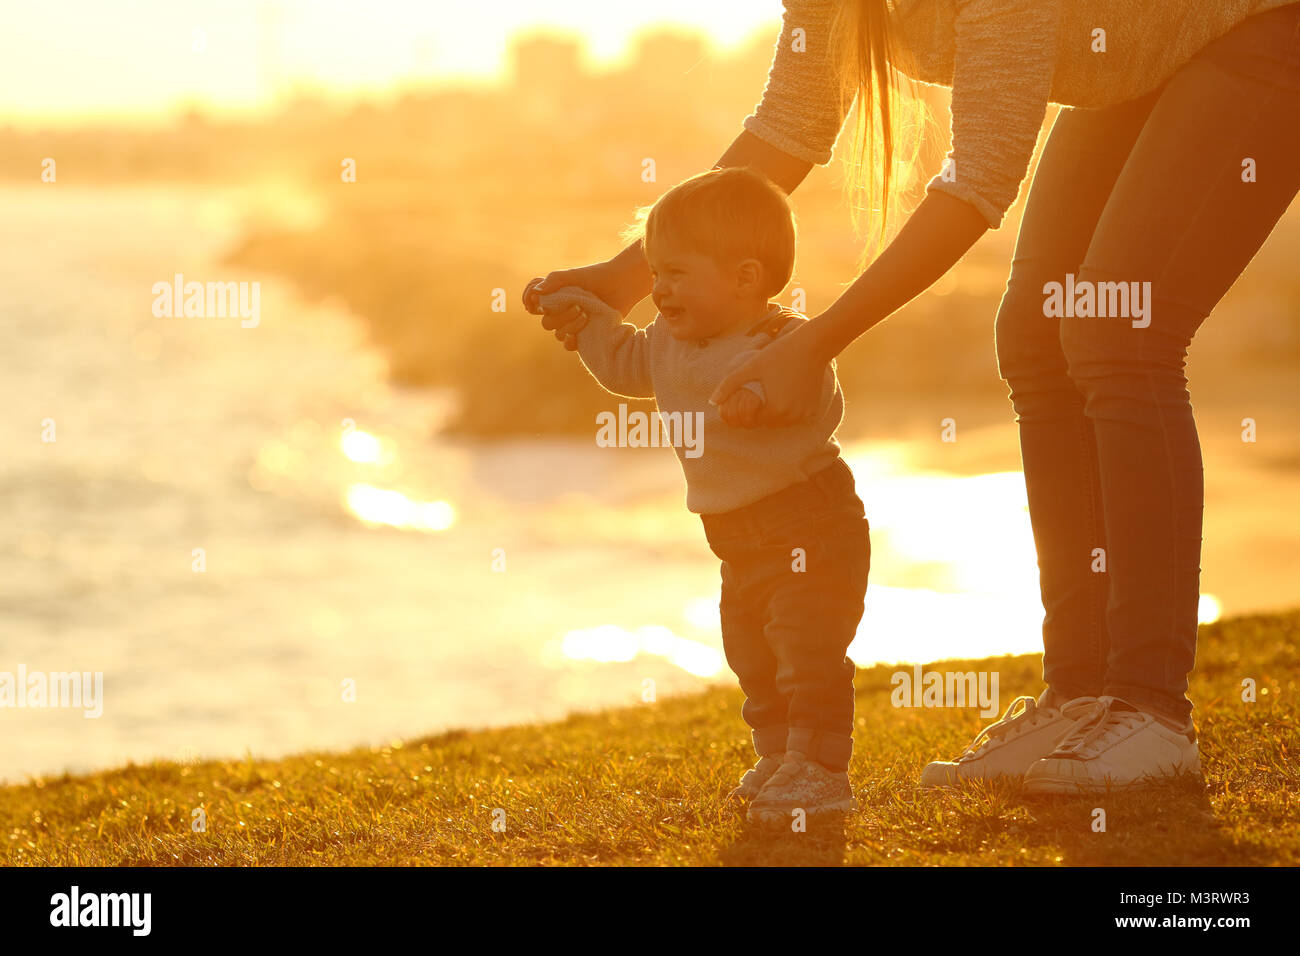 Vista laterale di un bambino ad imparare a camminare e madre aiutandolo sull'erba all'aperto al tramonto con una città in background Foto Stock